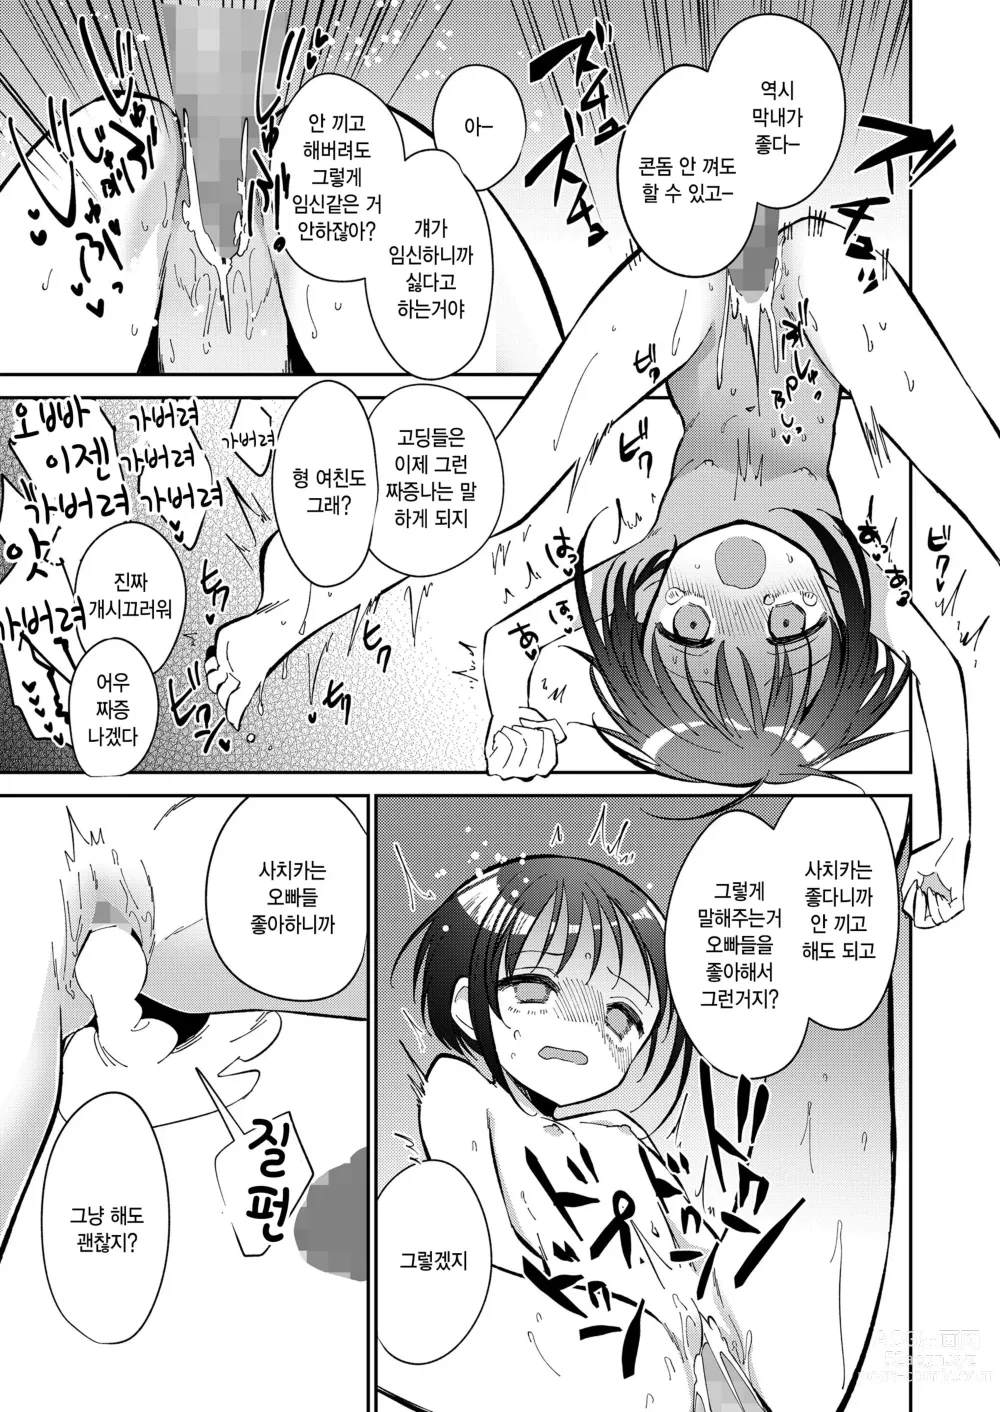 Page 47 of manga Watashi ga iki wo shiteru basho